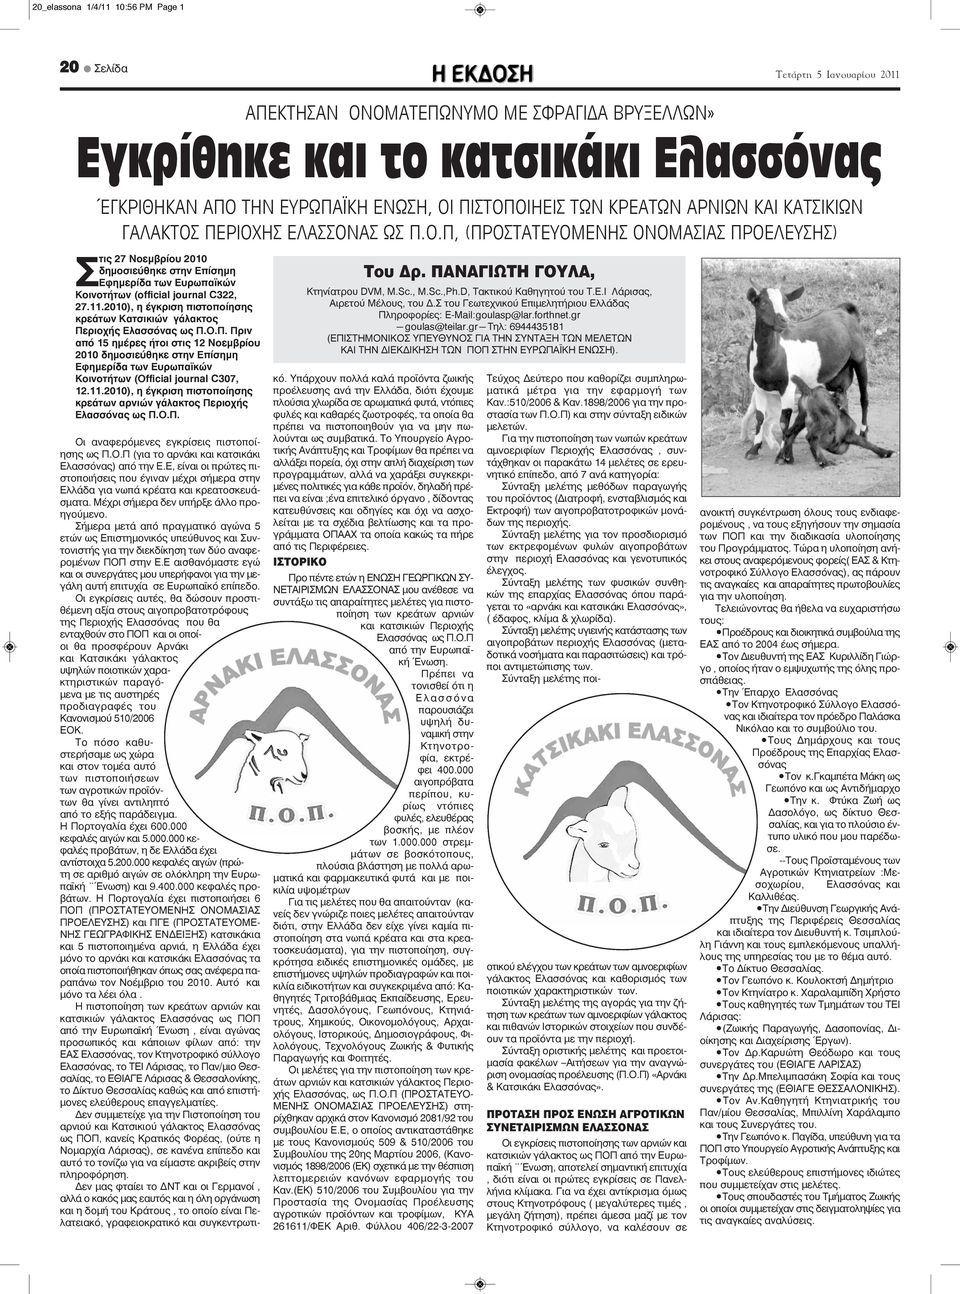 11.2010), η έγκριση πιστοποίησης κρεάτων Κατσικιών γάλακτος Περιοχής Ελασσόνας ως Π.Ο.Π. Πριν από 15 ημέρες ήτοι στις 12 Νοεμβρίου 2010 δημοσιεύθηκε στην Επίσημη Εφημερίδα των Ευρωπαϊκών Κοινοτήτων (Οfficial journal C307, 12.